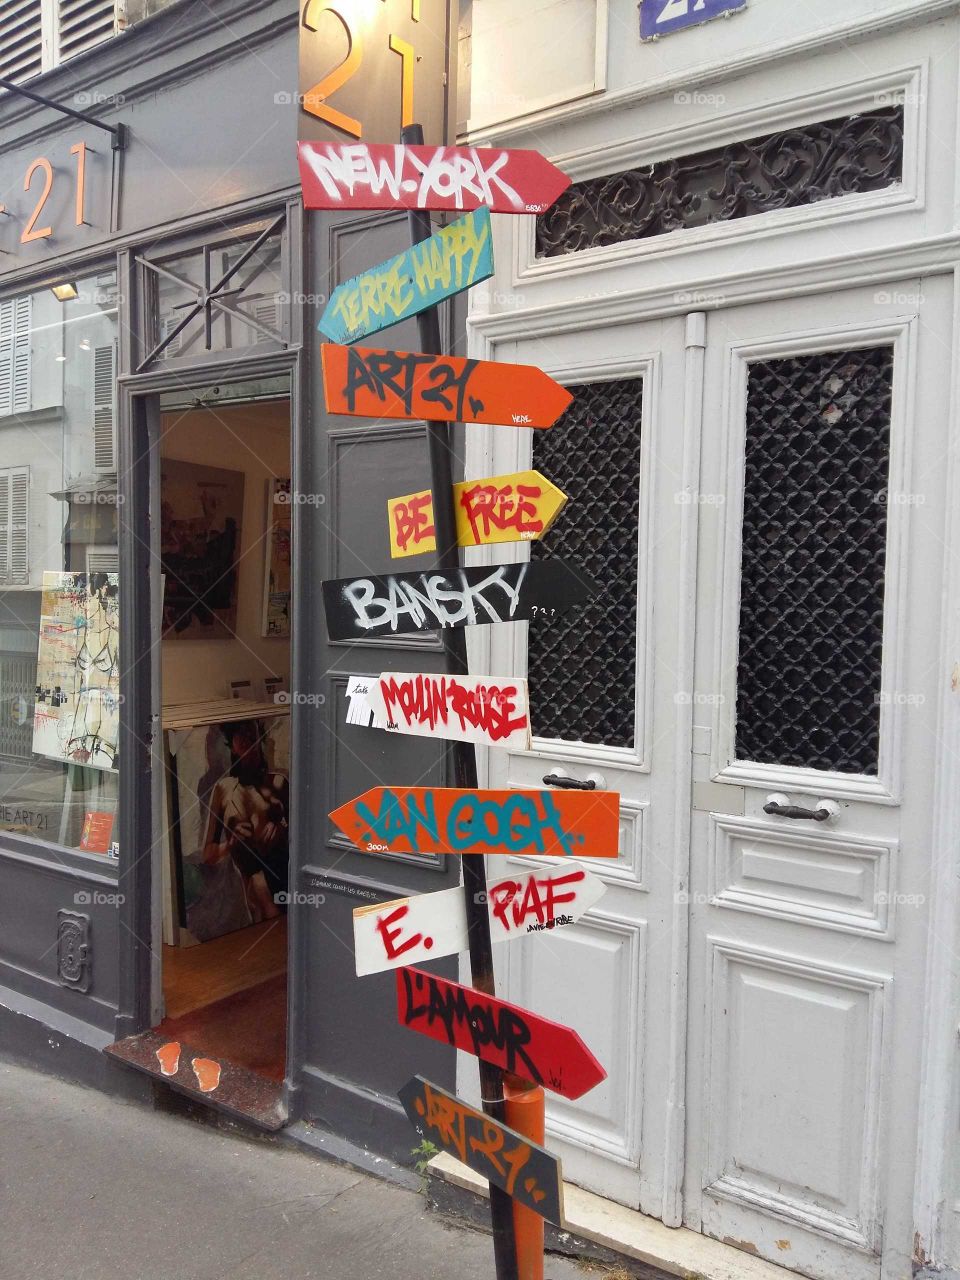 Cool sign in Paris